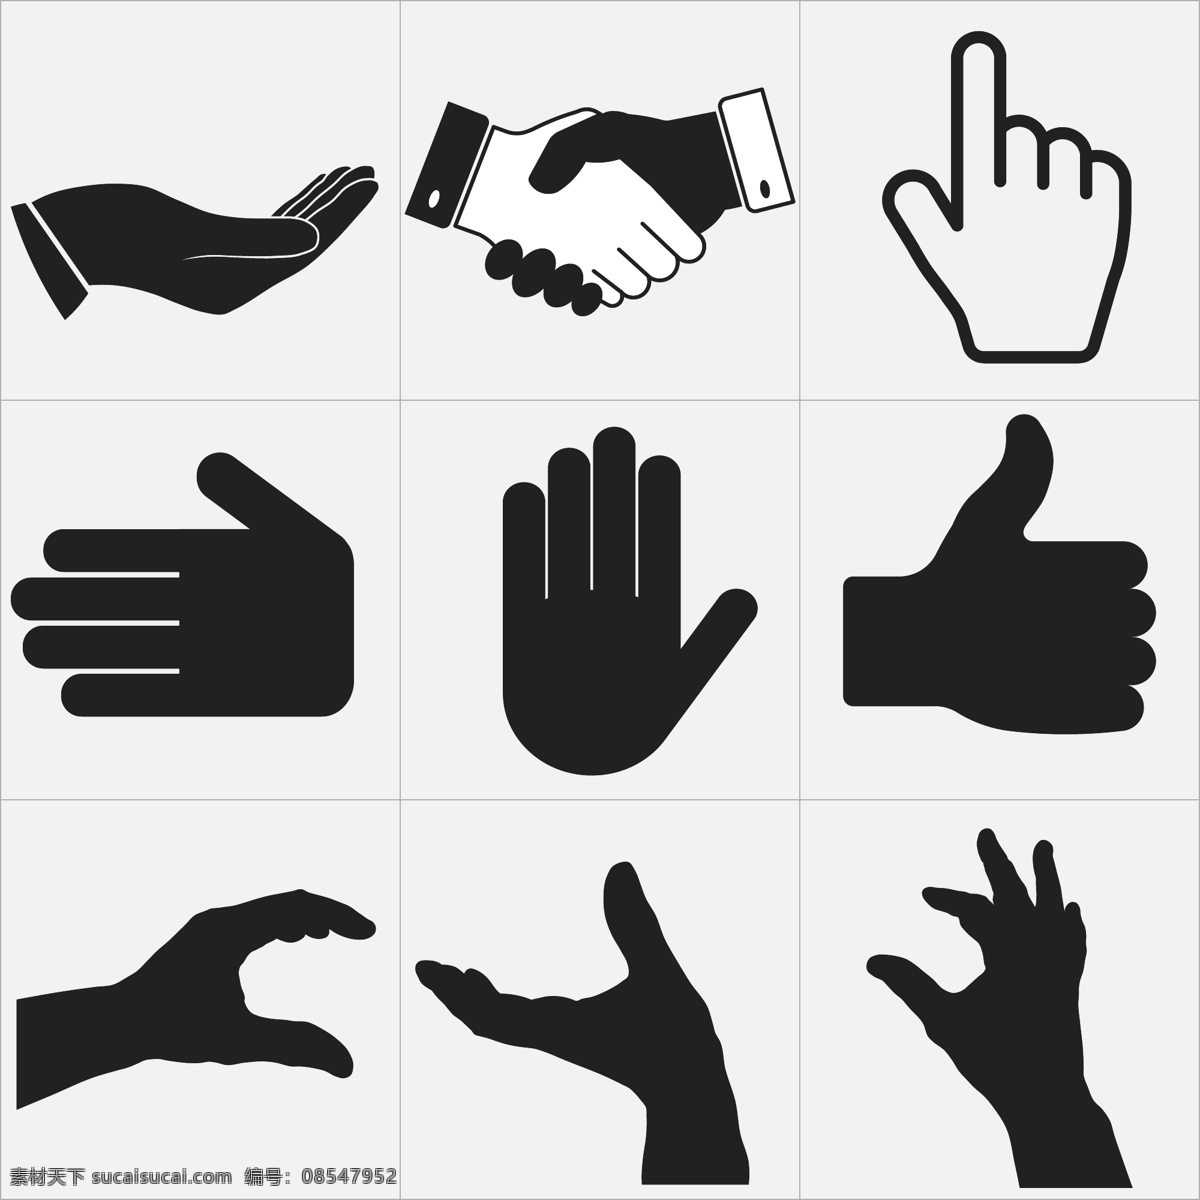 手势 卡通手势 手部特写 手势喻意 手势创意 人物 手势合集 手势图片 手的表情 各种手势